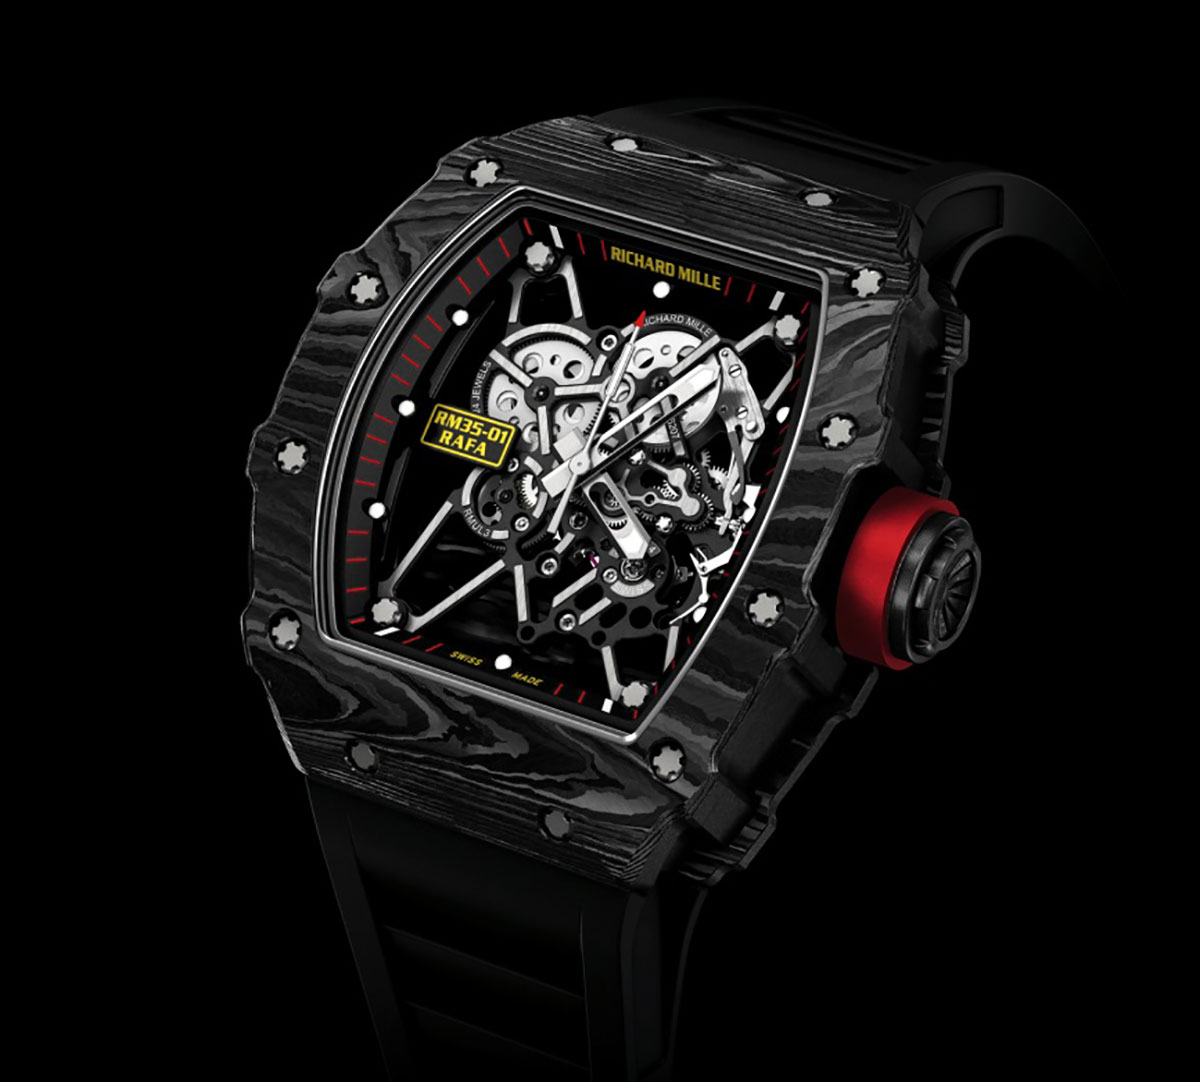 RM 35-01 Rafael Nadal - một trong những mẫu đồng hồ điển hình của Richard Mille có lớp vỏ làm từ TPT Carbon